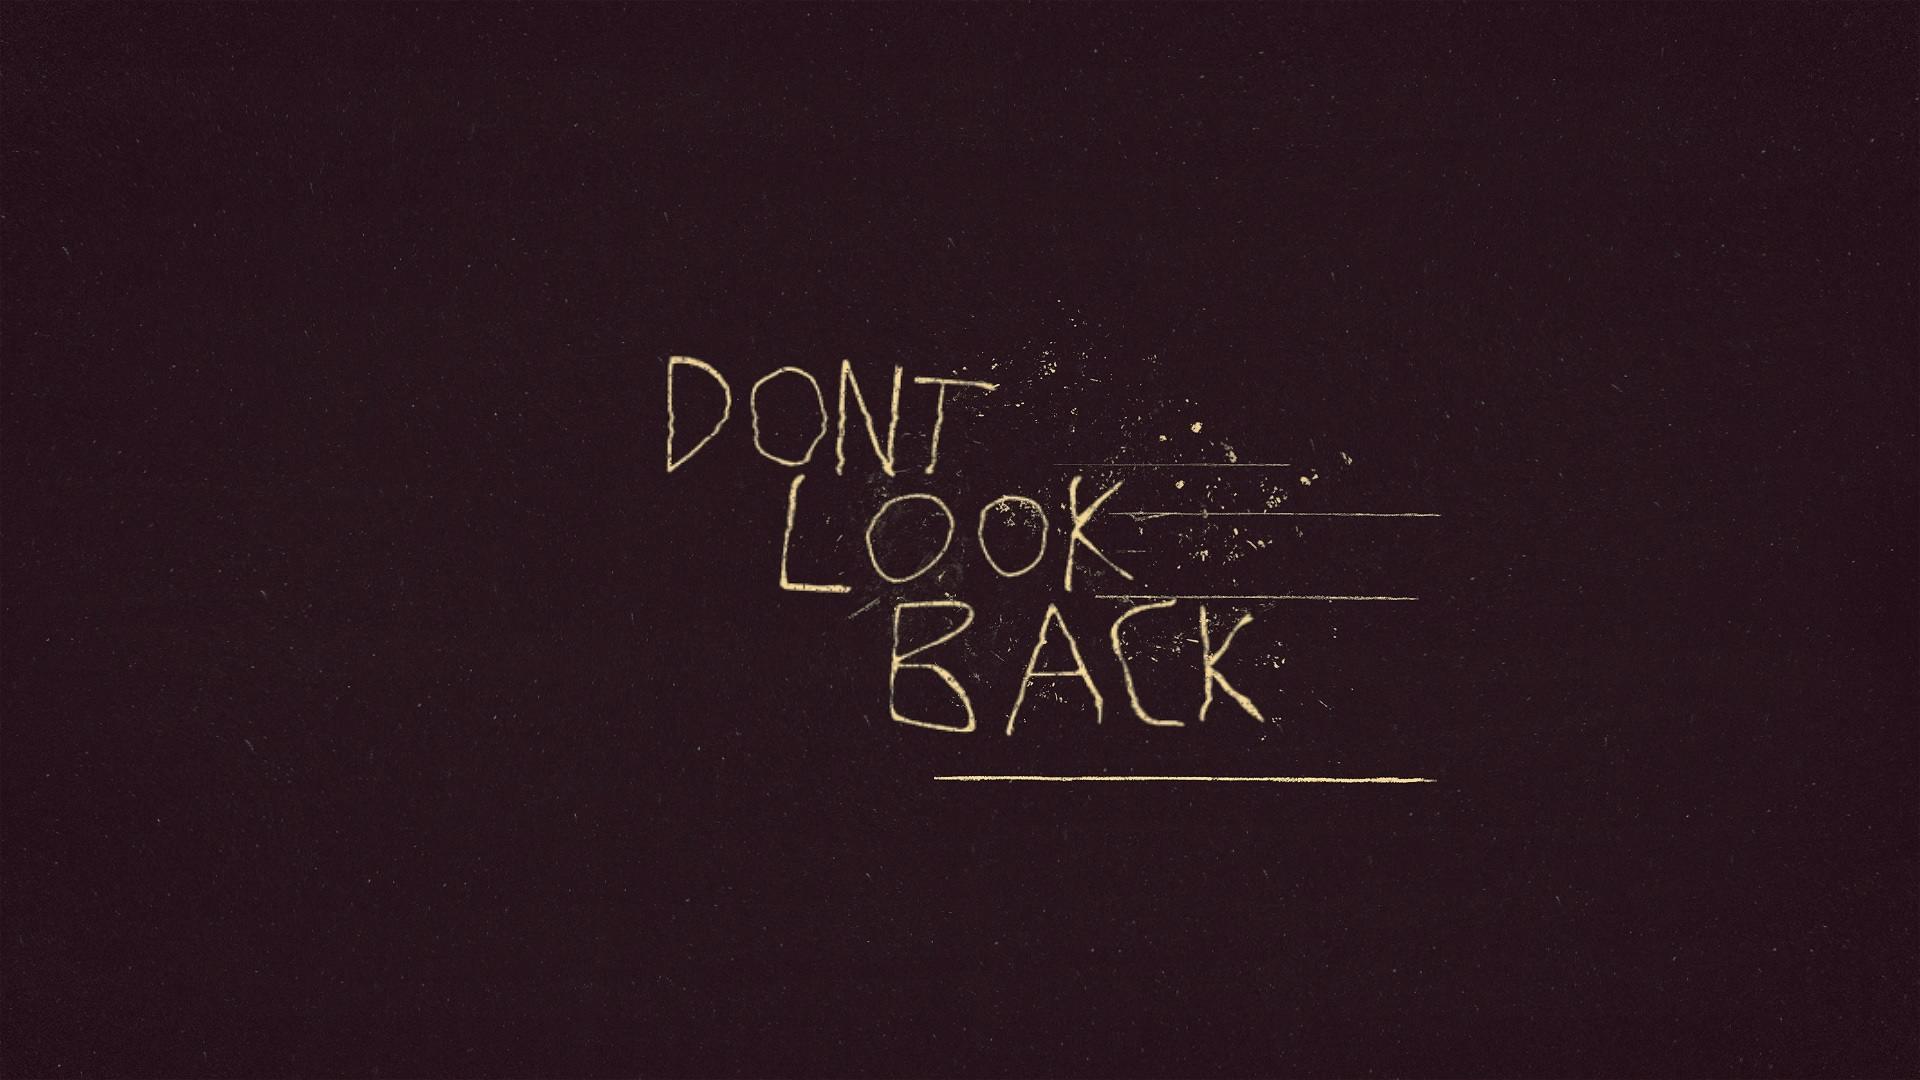 王致白「Dont look back」.jpg